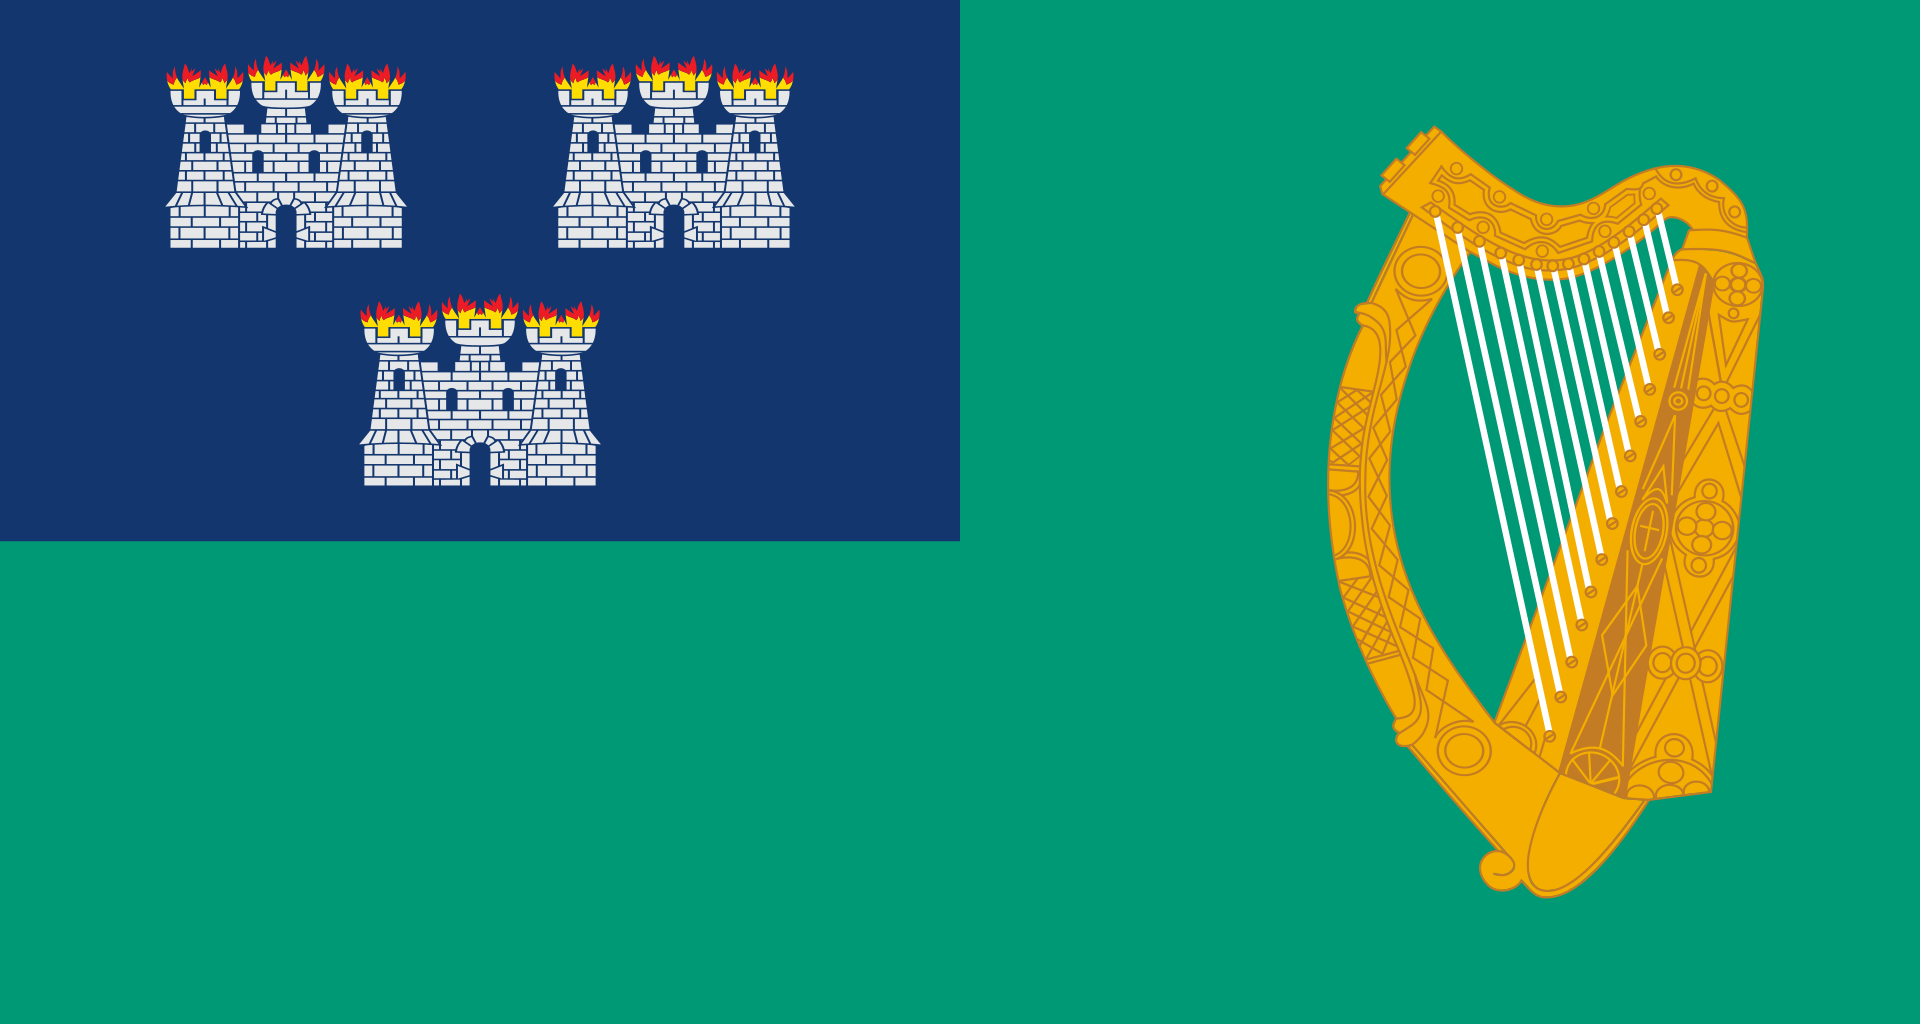 1920px-IRL_Dublin_flag.svg.png, 279kB